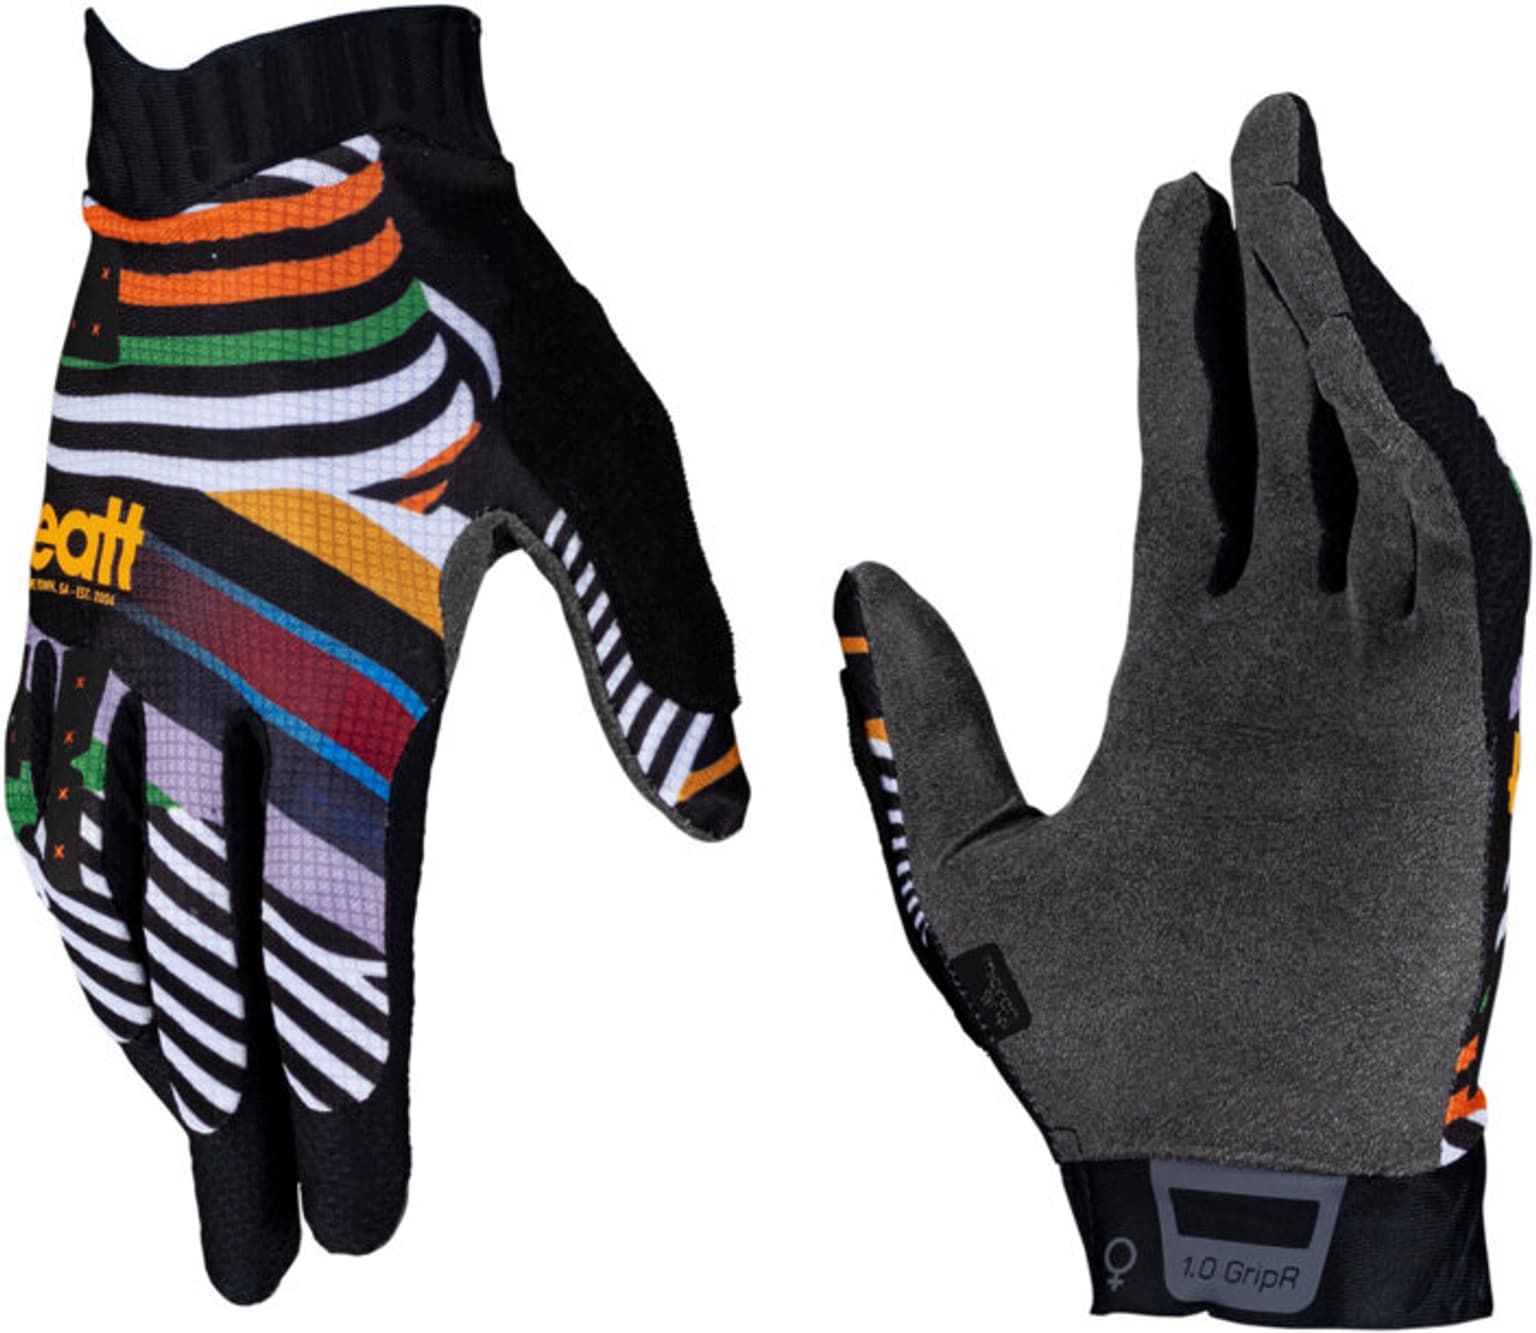 Leatt Leatt MTB Glove 1.0 Women Gripr Guanti da bici policromo 2